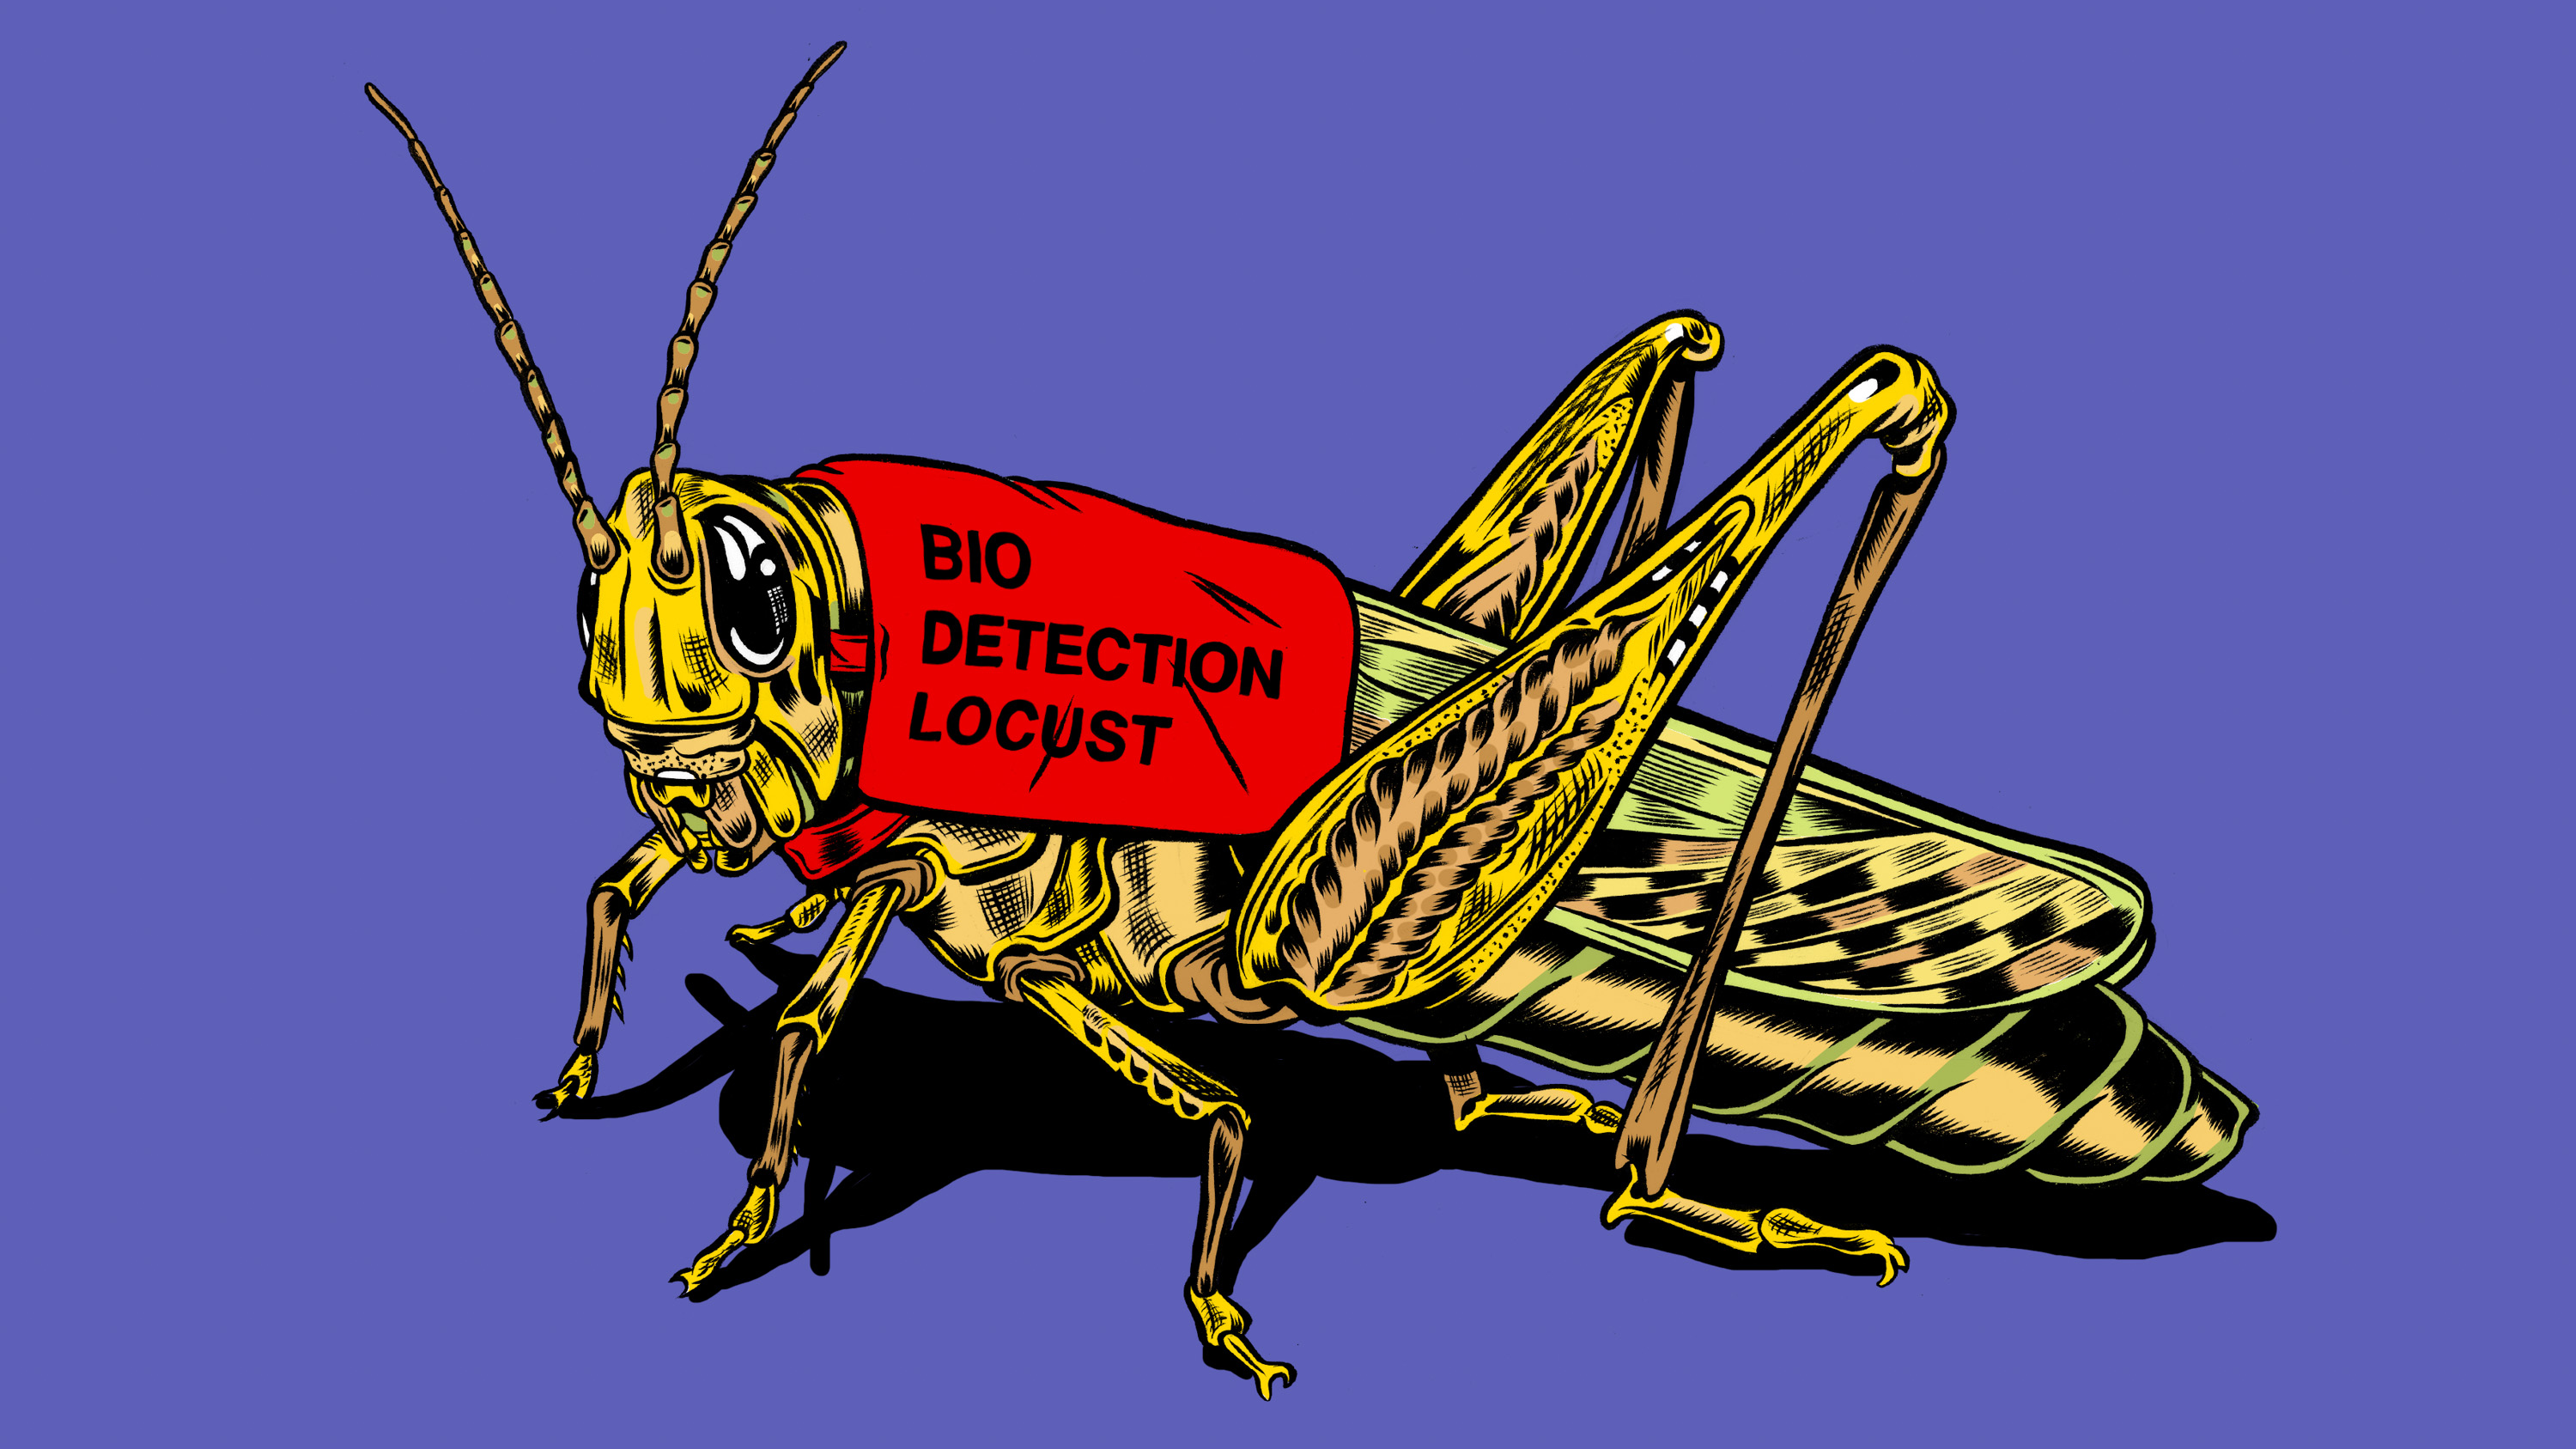 biodetection locust concept